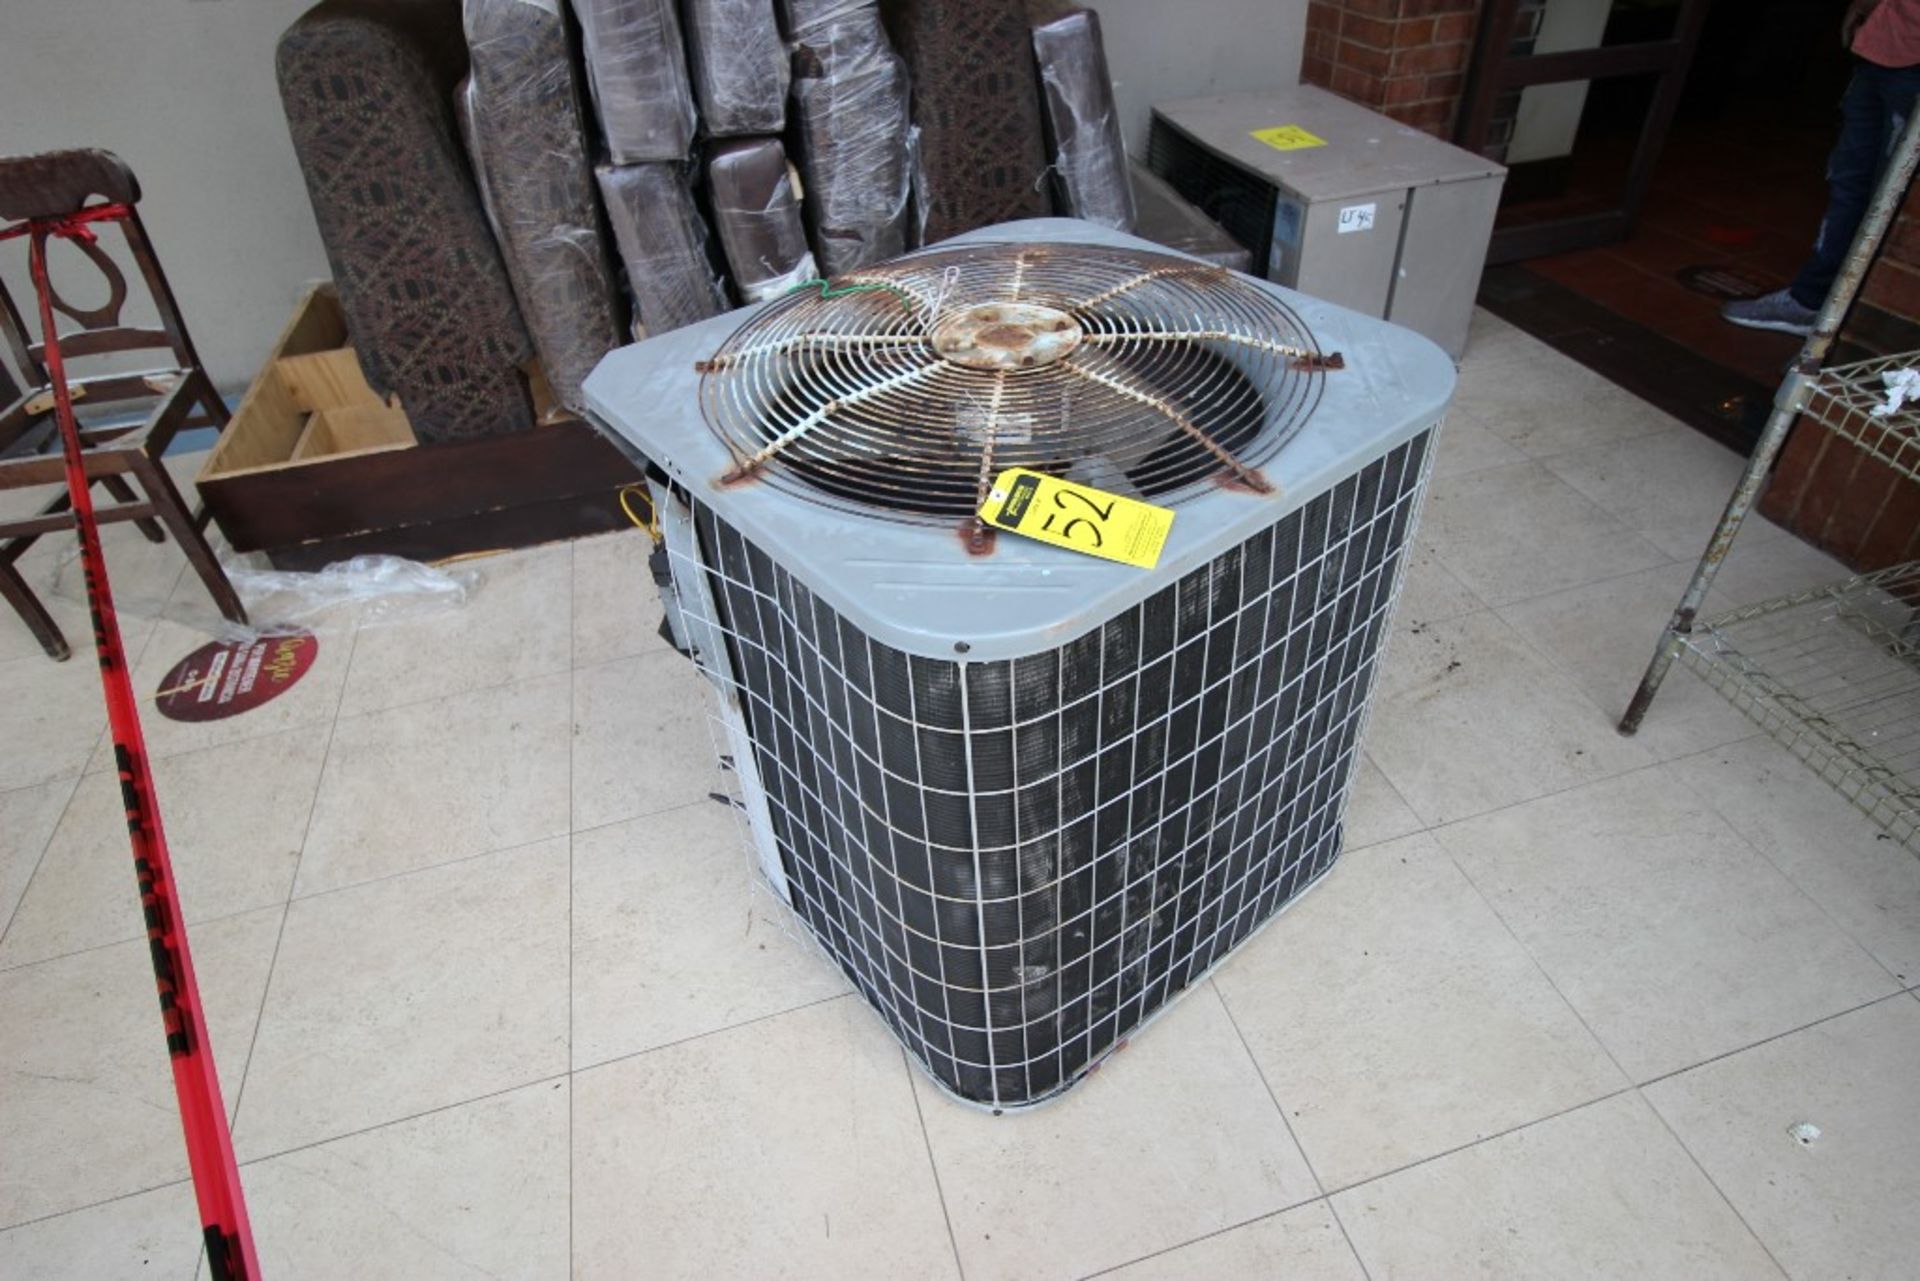 3 Unidades Condensadoras para aire acondicionado de un ventilador marca York, modelo:YCJD36S41S1A, - Image 5 of 19